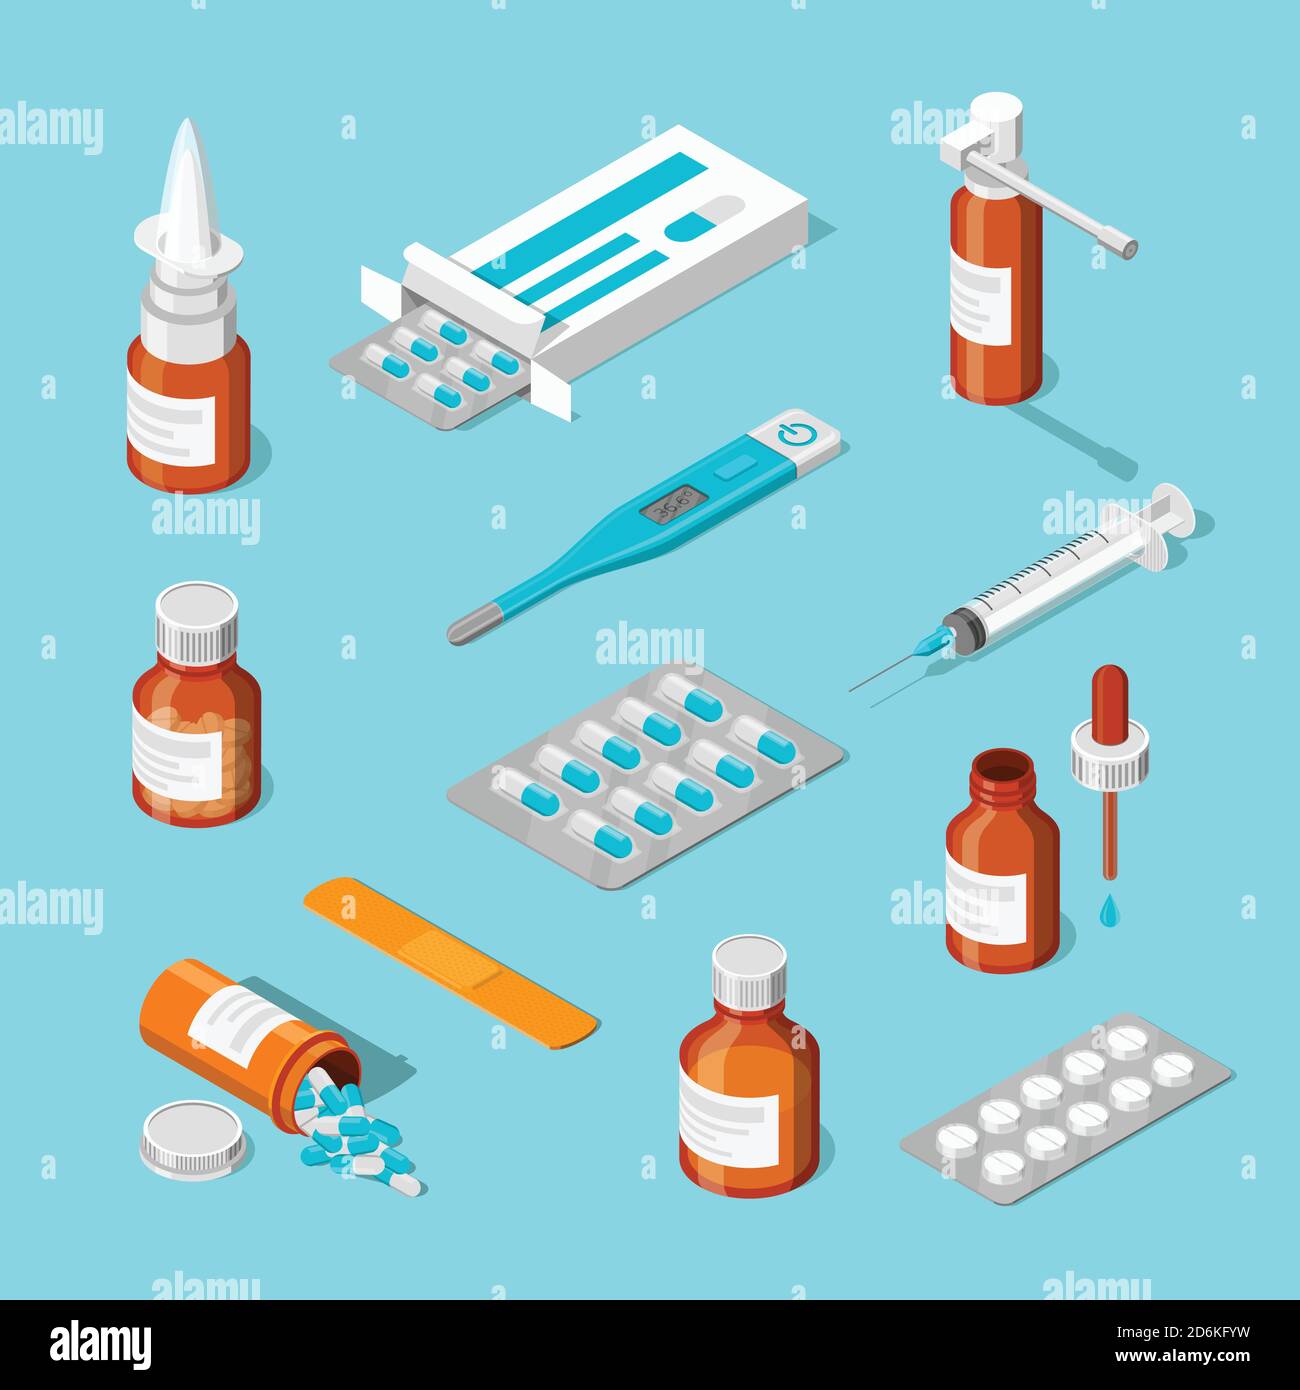 Apotheke, Medizin und Gesundheitswesen Vektor 3d isometrische Symbole gesetzt. Pillen, Drogen, Flaschen flache Illustration. Stock Vektor